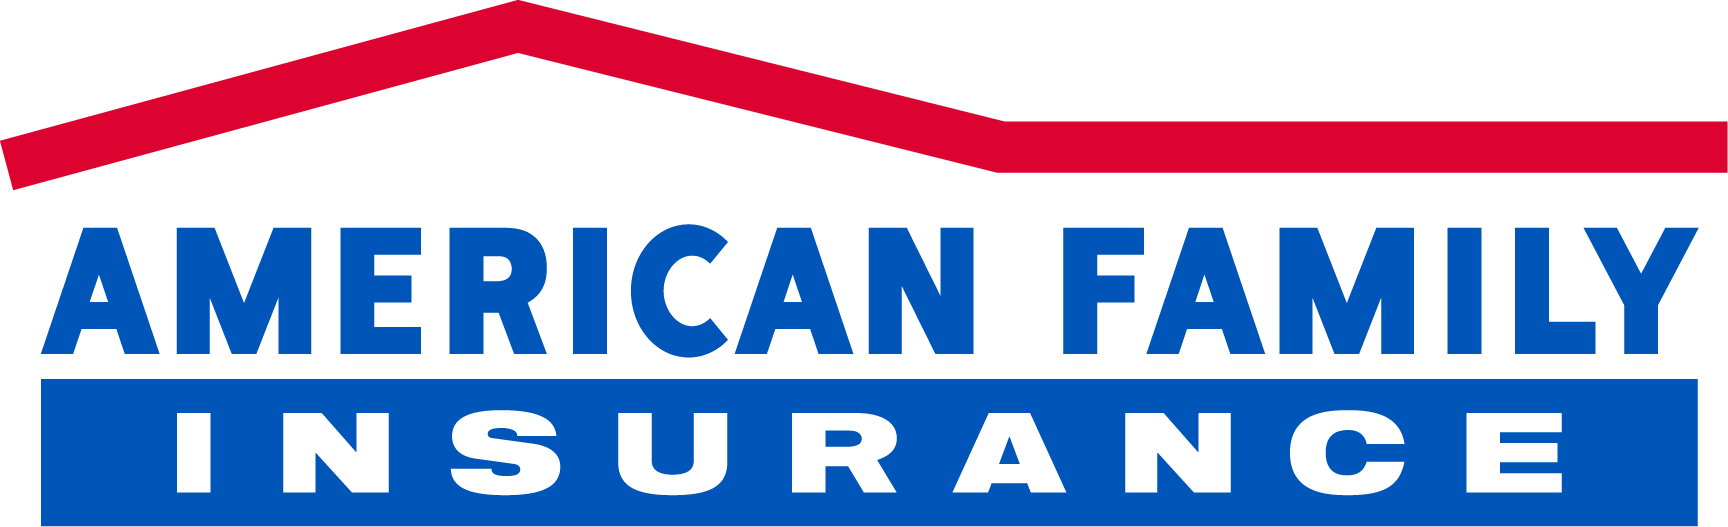 파일:American Family Insurance logo.png